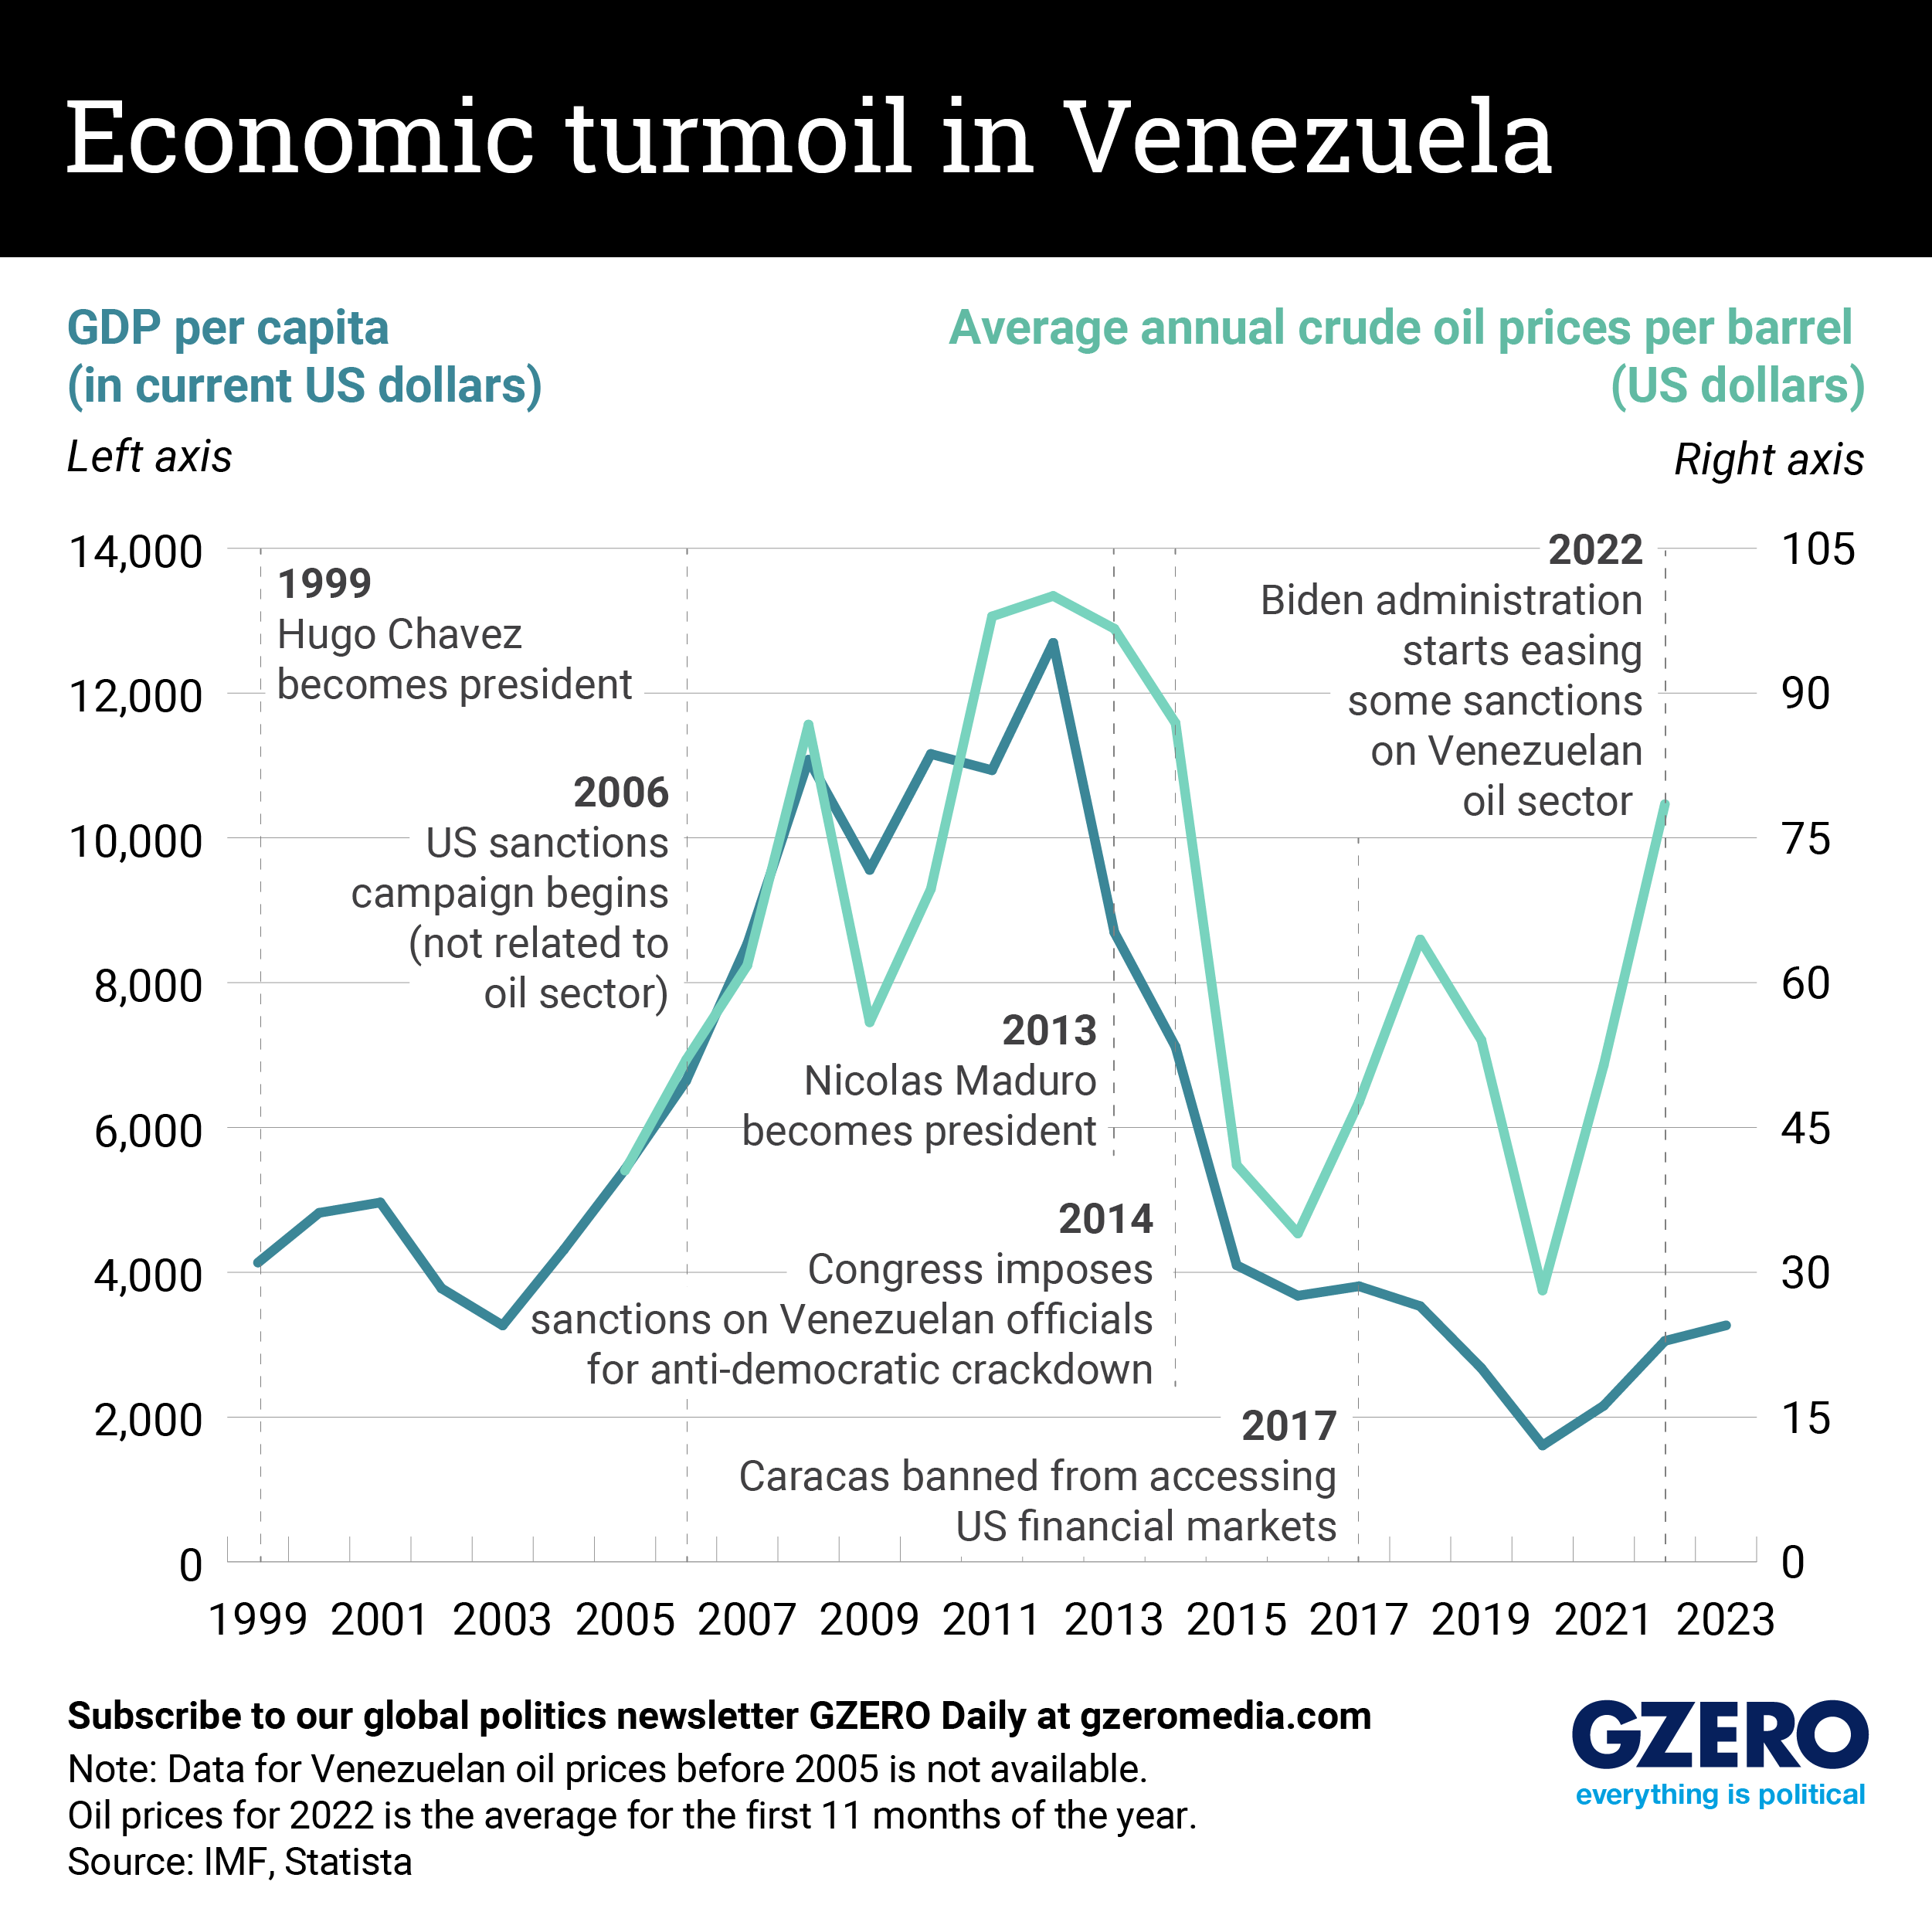 A graph comparing Venezuela's GDP per capita with the average price of crude oil.